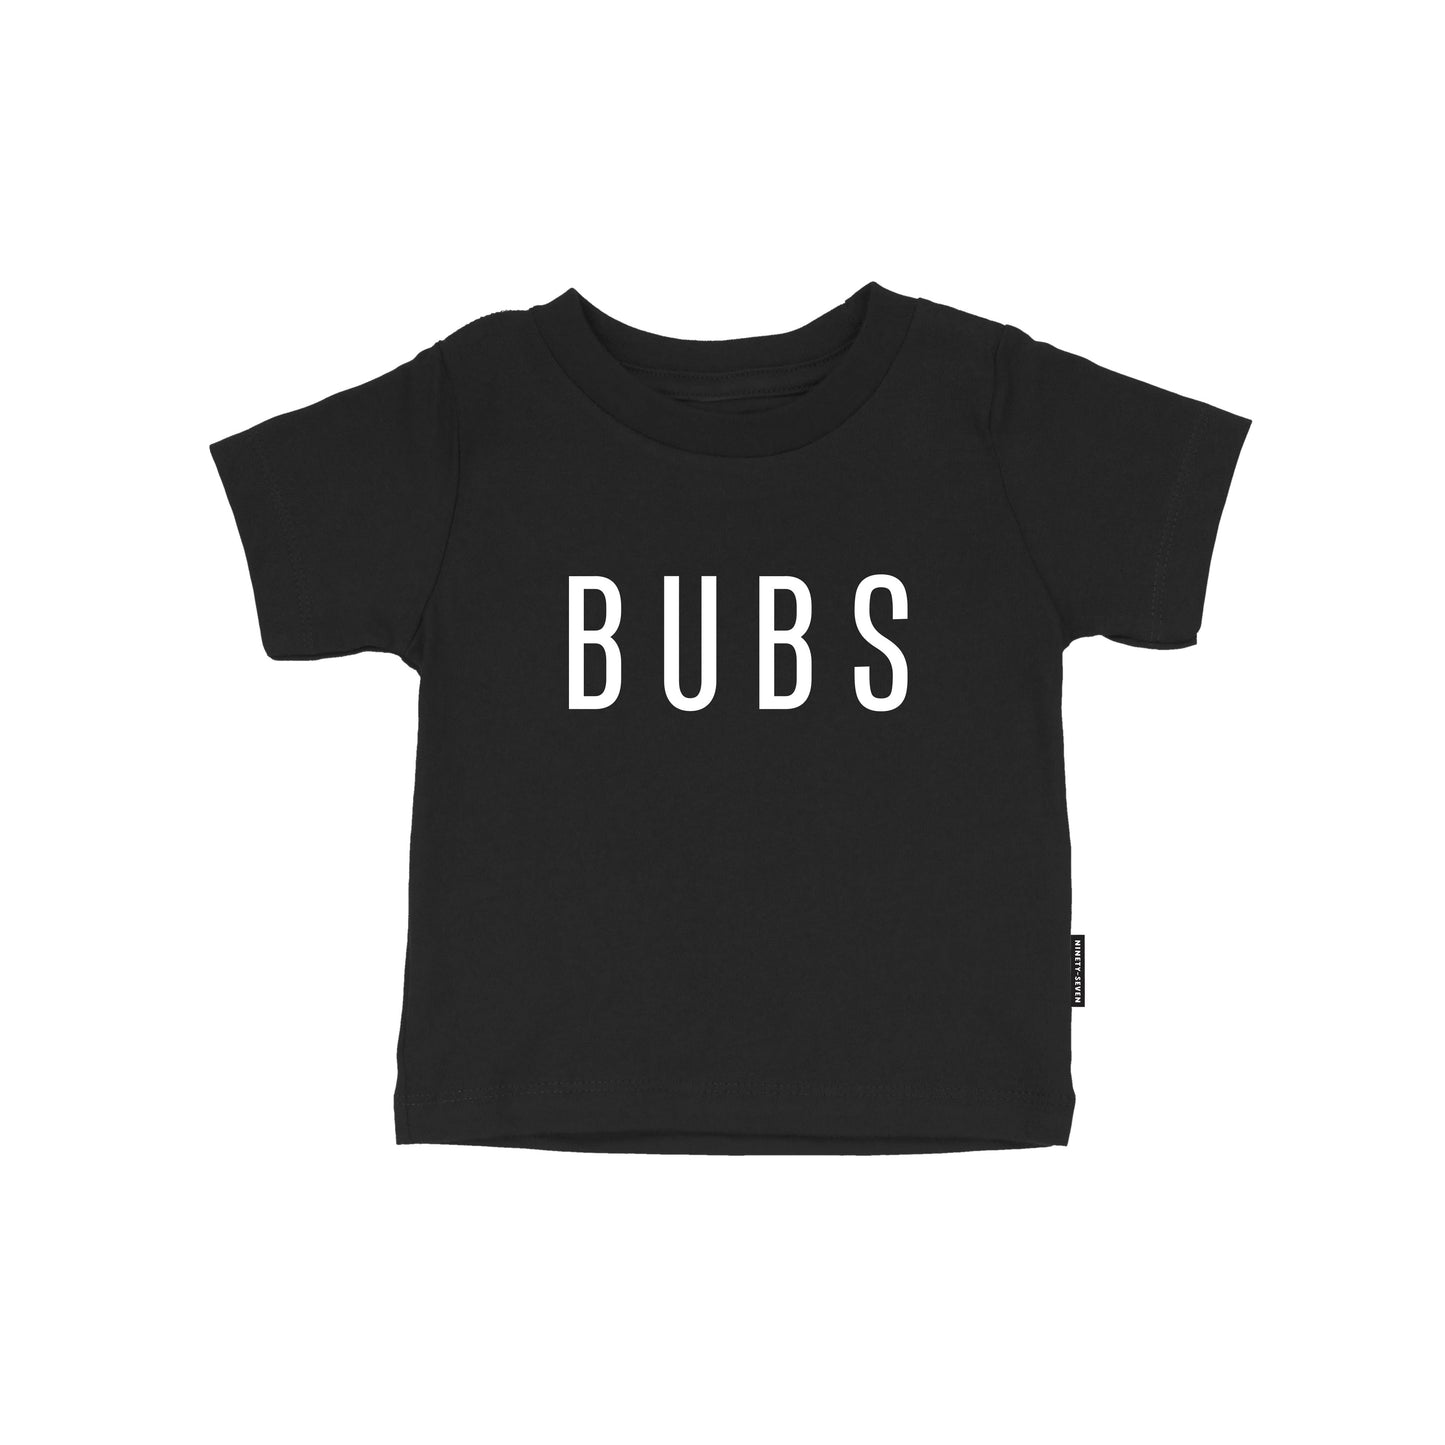 Bubs - Black Kids Tee